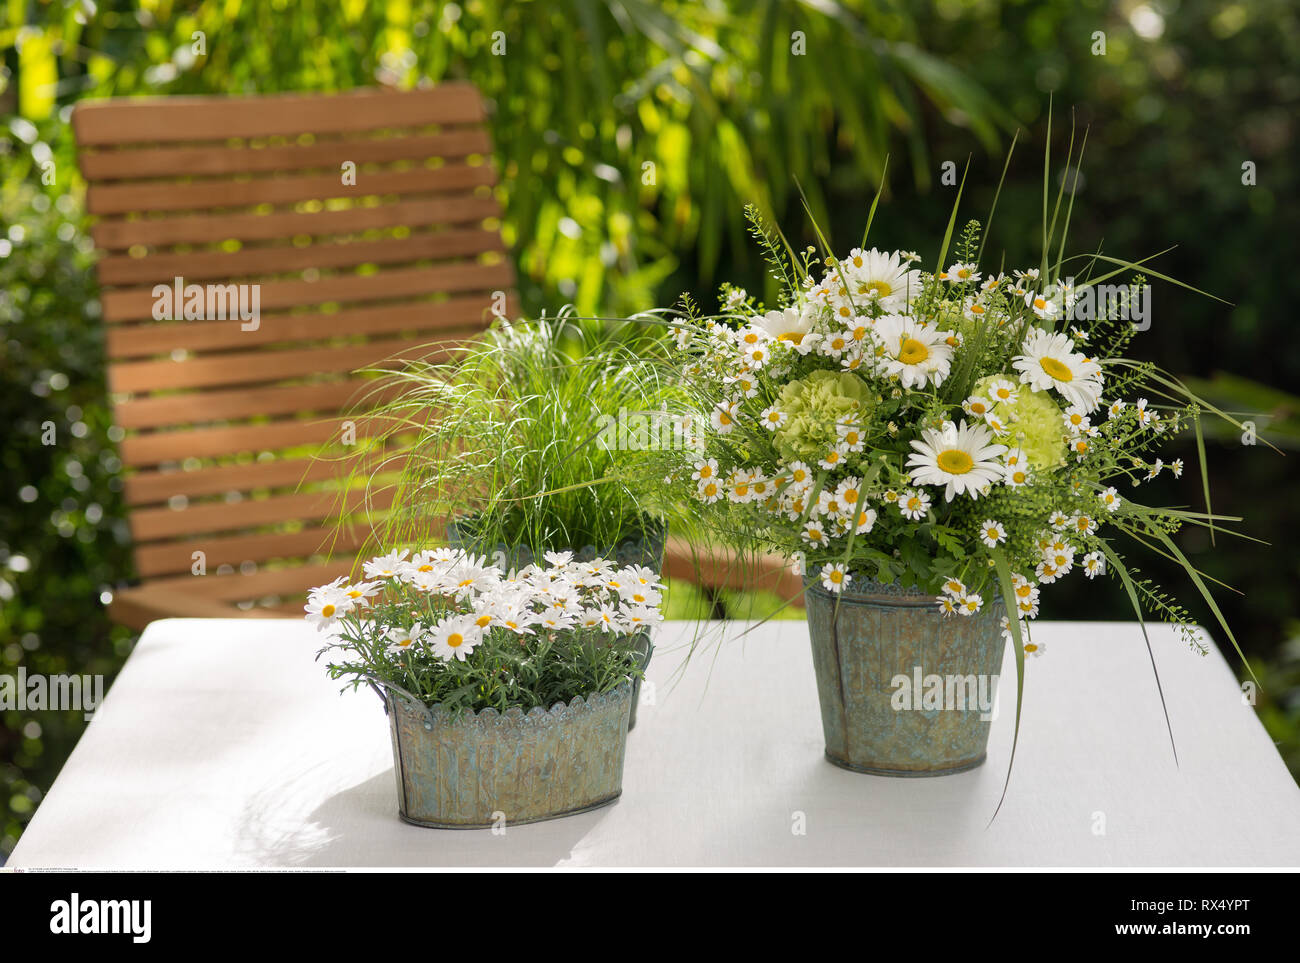 La botanica, bianco-verde estate bouquet, attenzione! Per Greetingcard-Use / Postcard-Use nei Paesi di lingua tedesca talune restrizioni possono applicare Foto Stock